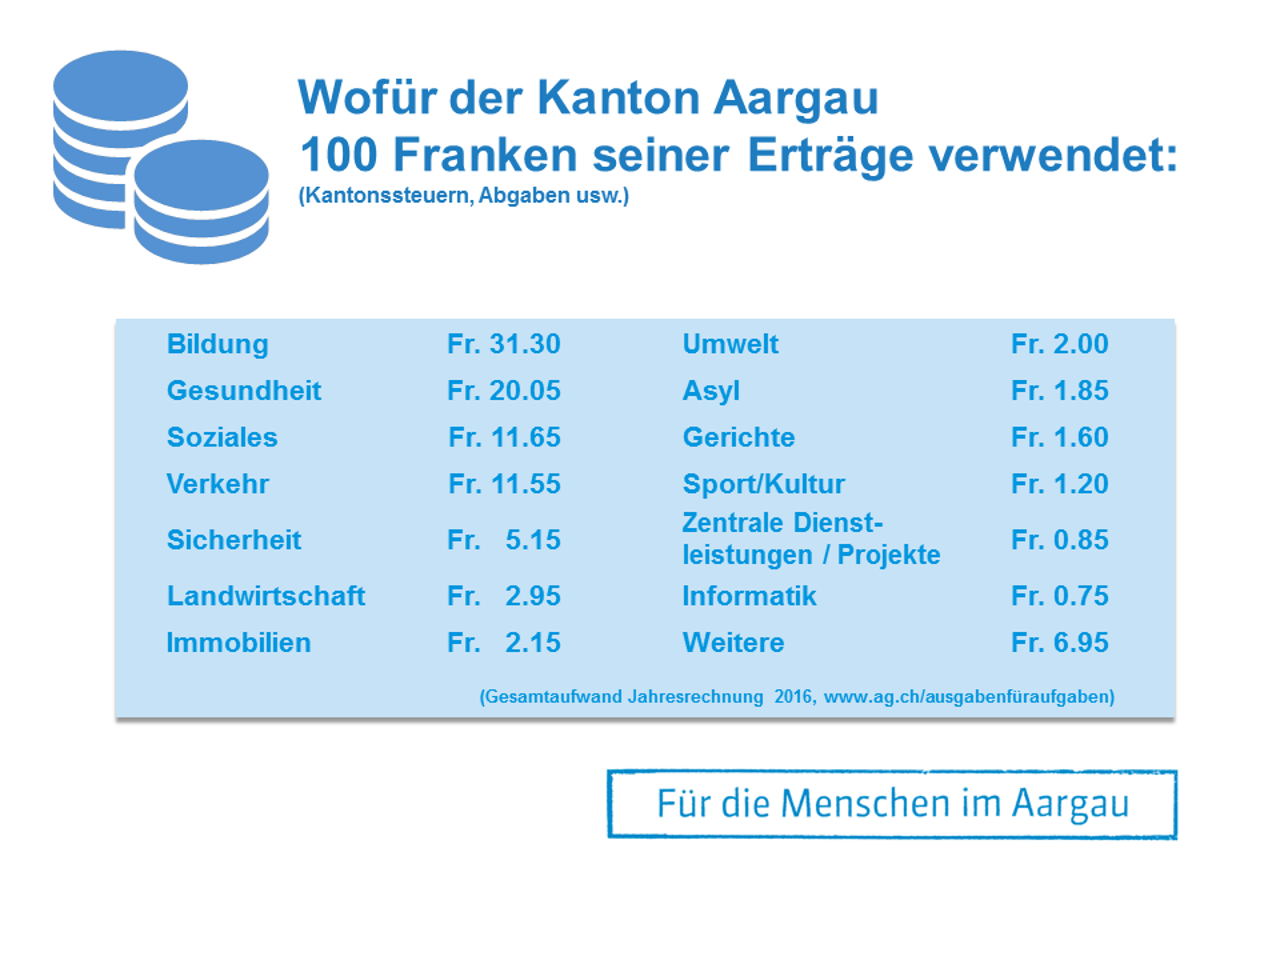 Wofür der Kanton Aargau100 Franken seiner Erträge ausgibt